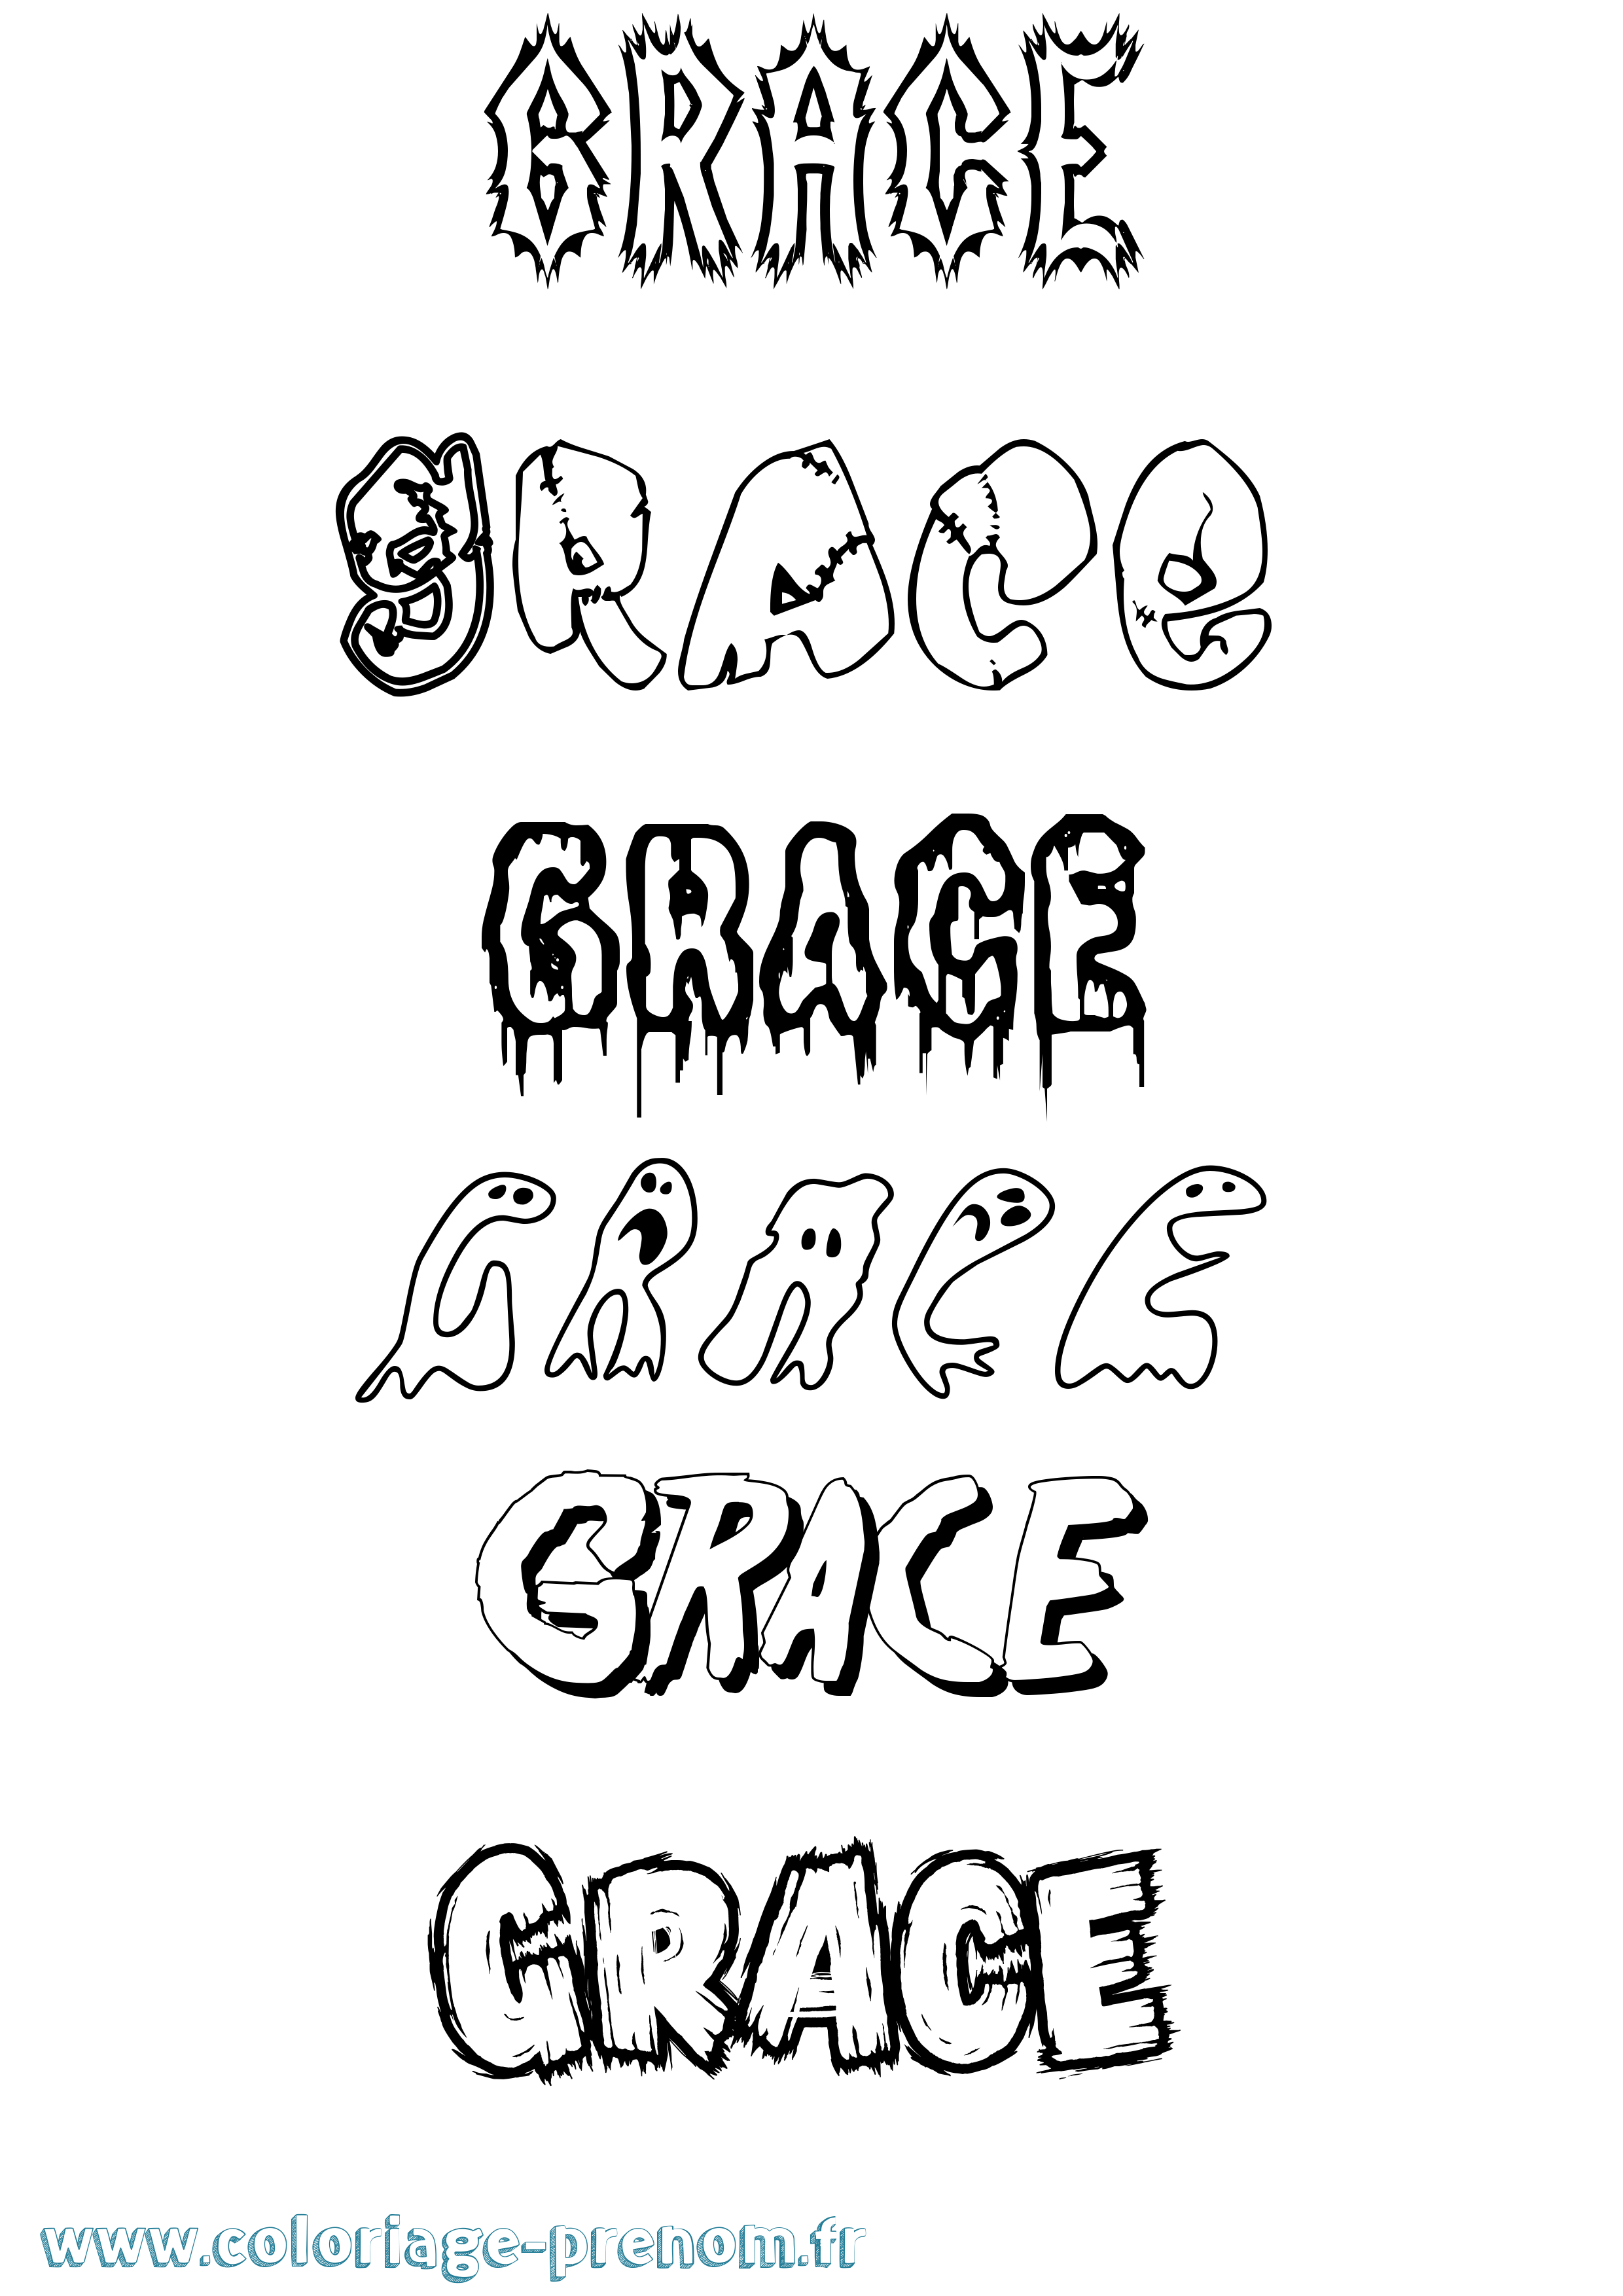 Coloriage prénom Grace Frisson